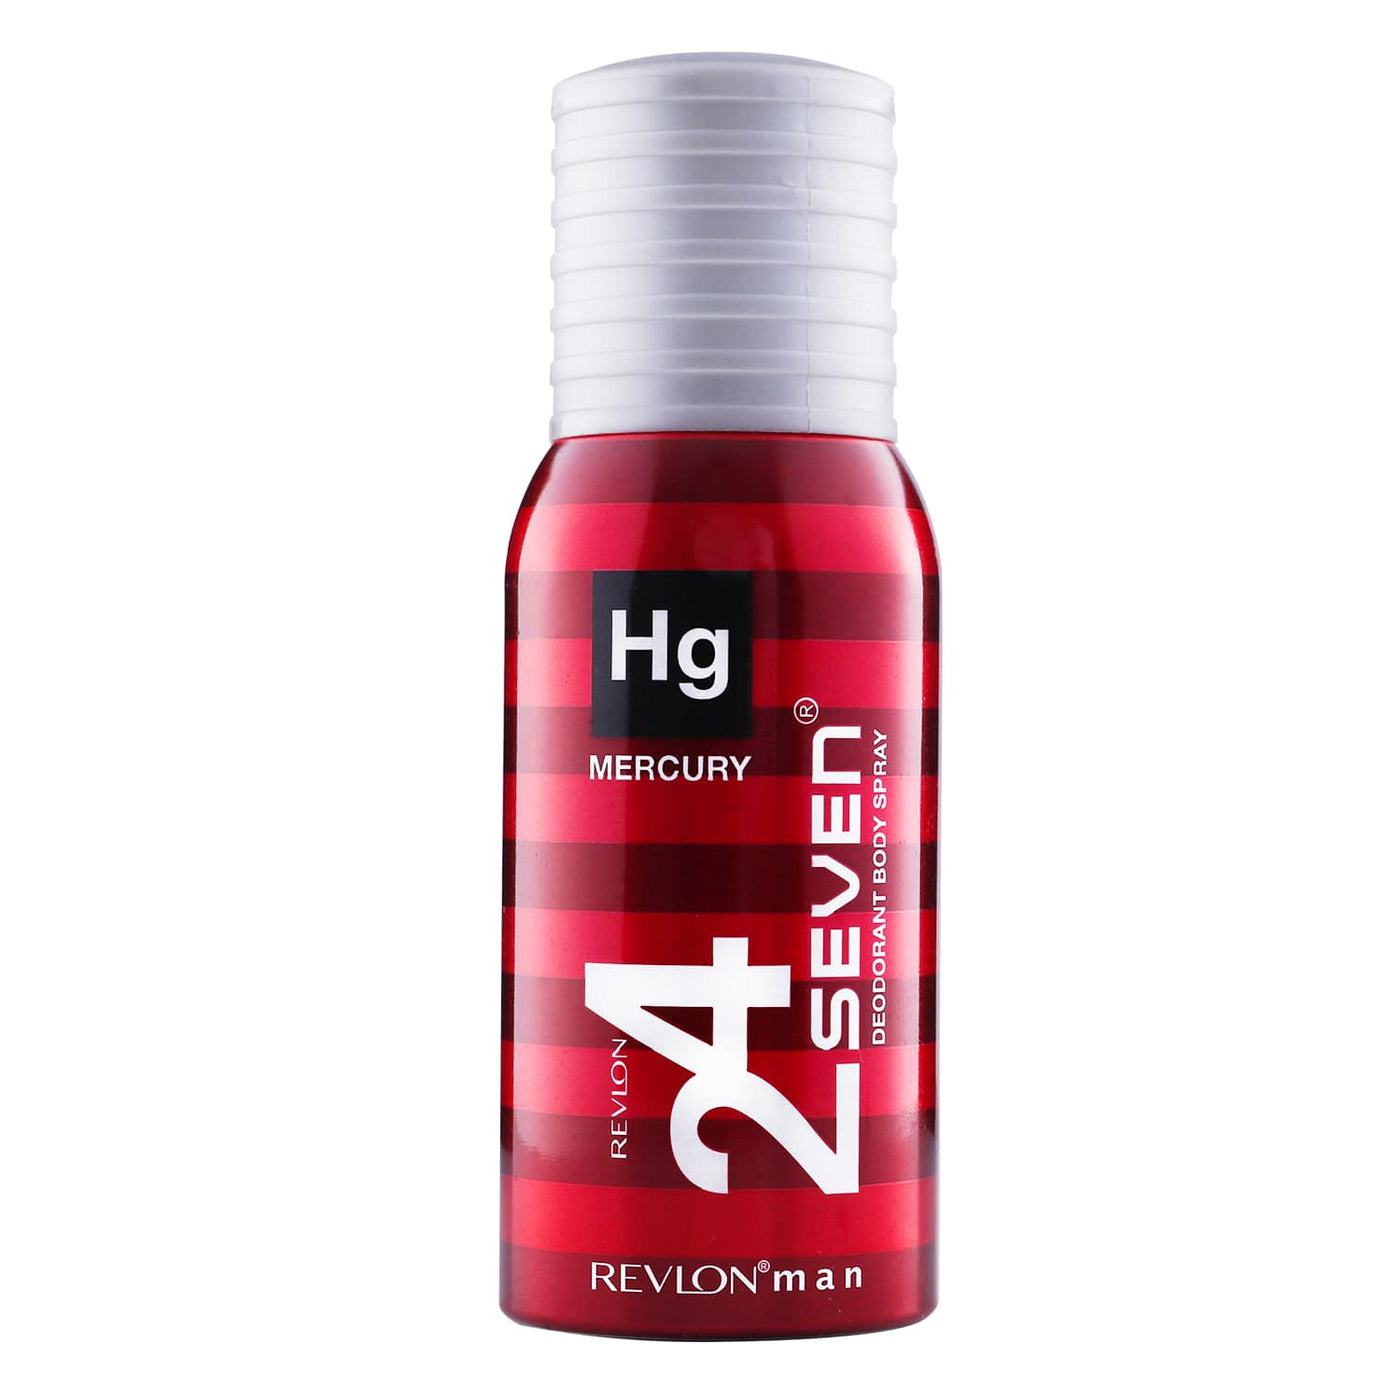 Revlon 24 Seven - Perfumed Body Spray - Special Offer